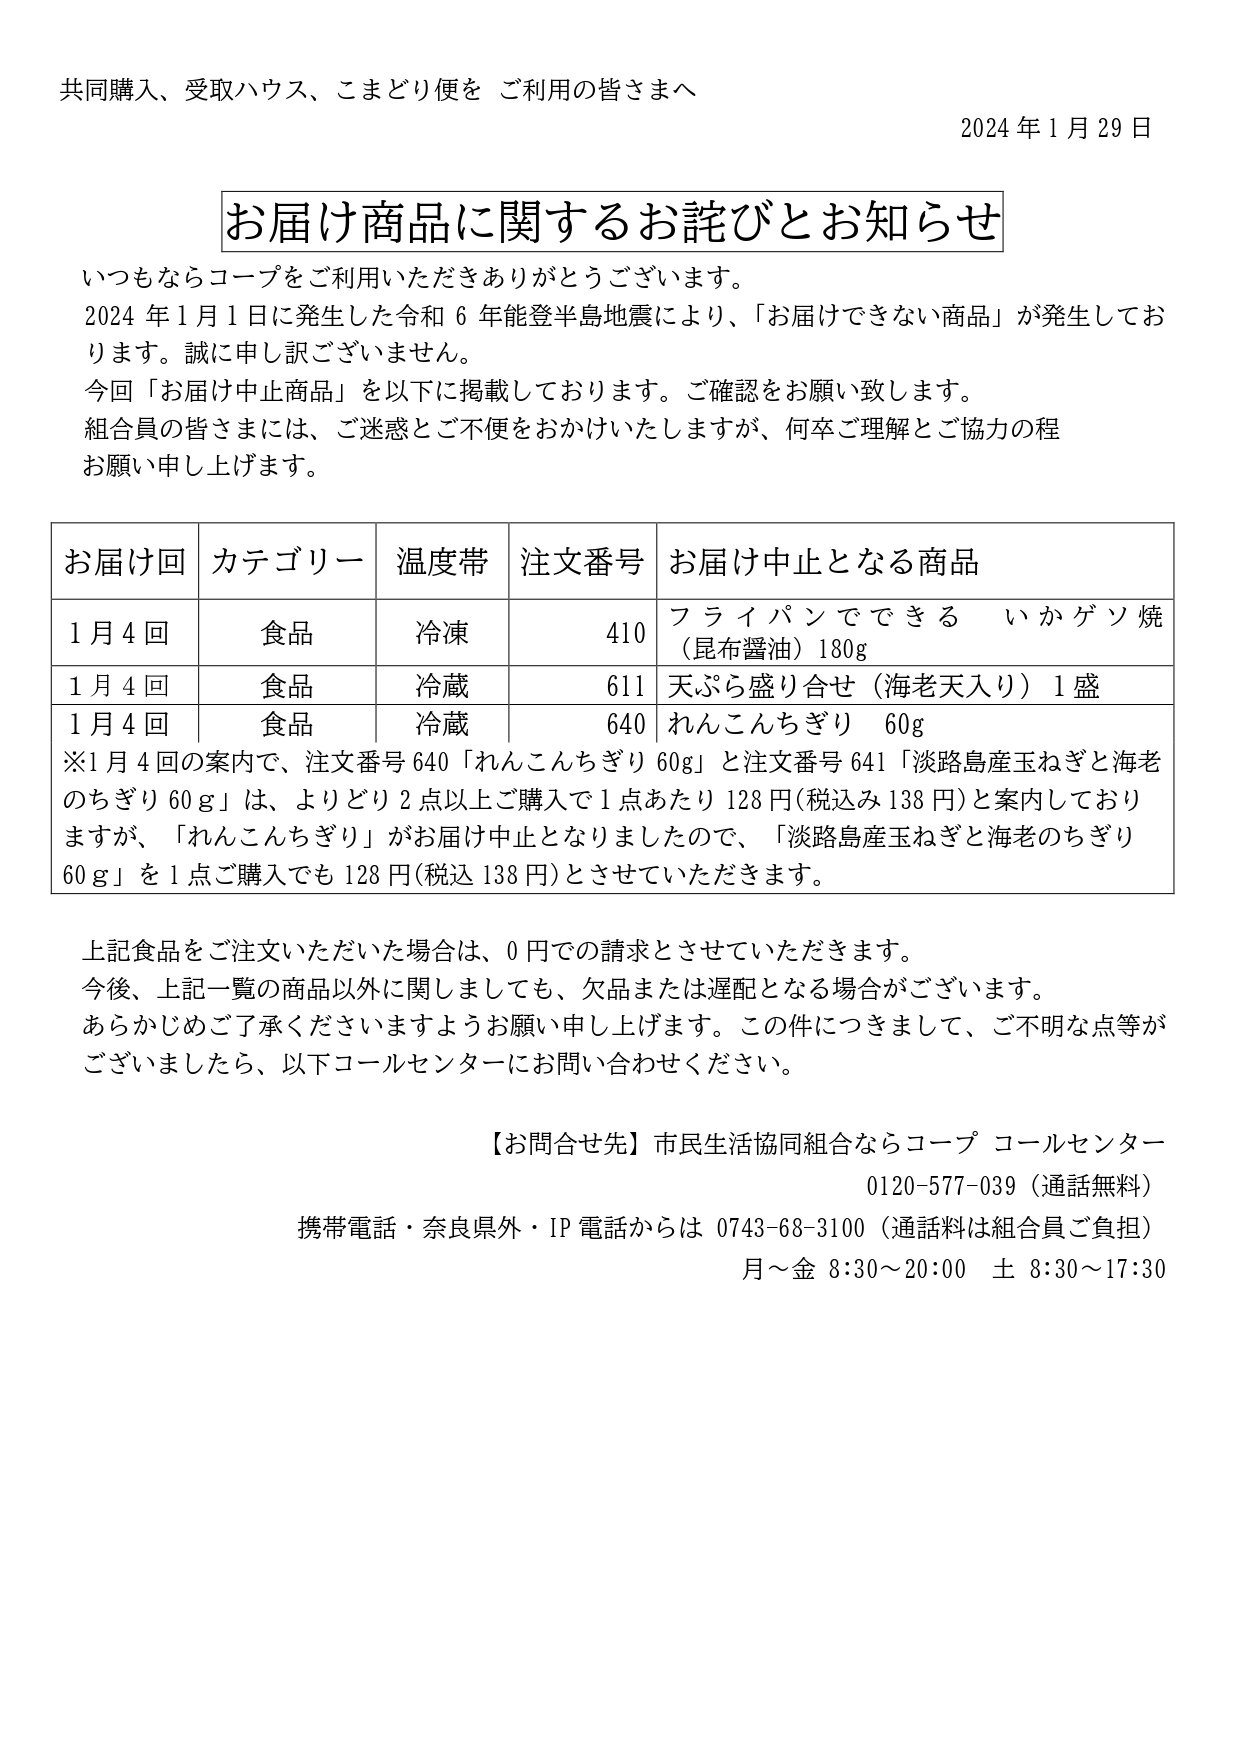 能登半島地震による、お届け商品に関するお詫びとお知らせ(2024年1月30日更新)